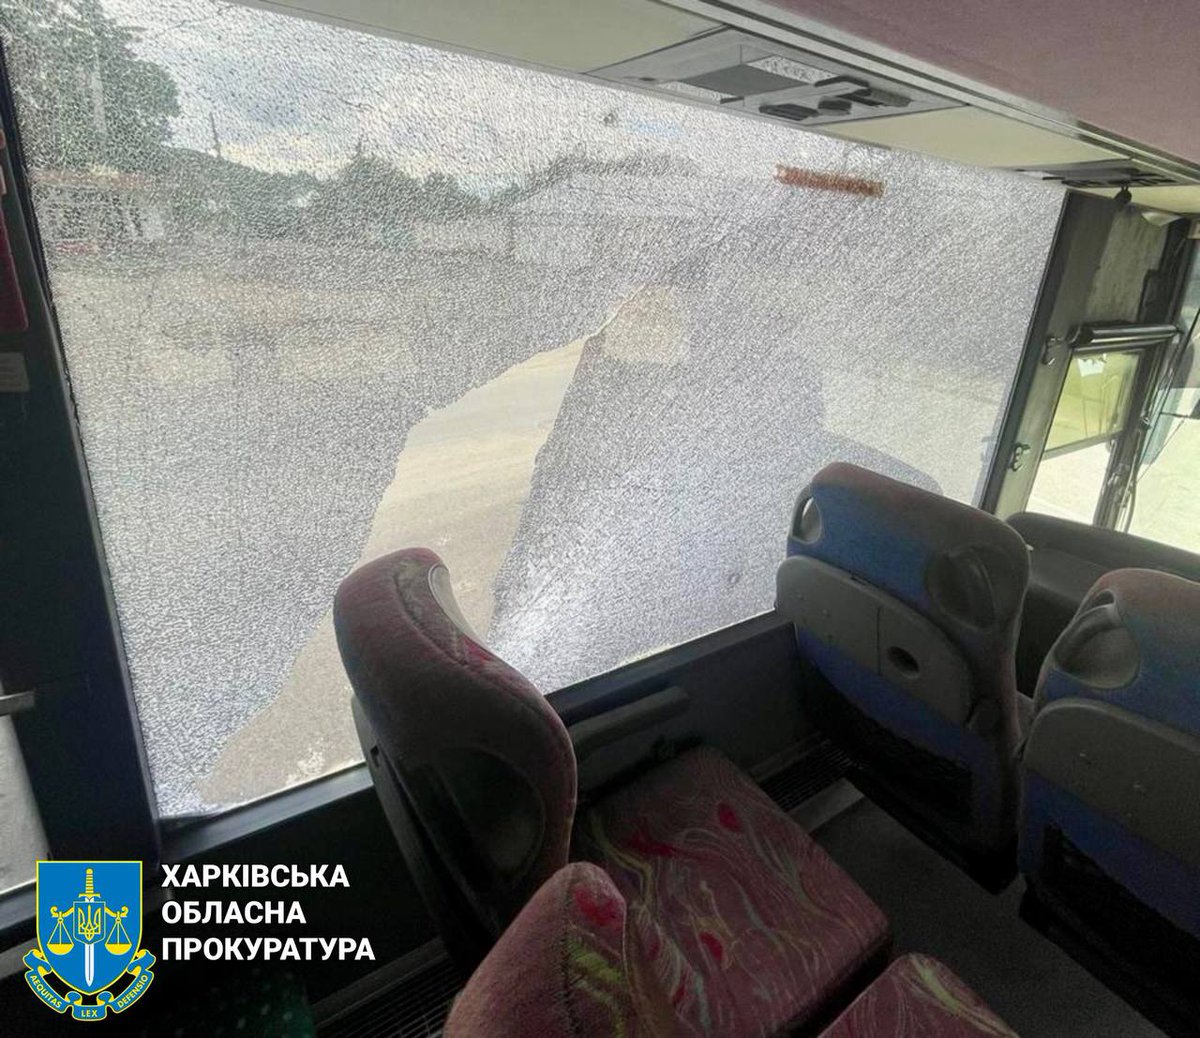 Τρεις τραυματίες, μεταξύ των οποίων 2 αστυνομικοί ως αποτέλεσμα επίθεσης με drone στο Κουπιάνσκ χθες